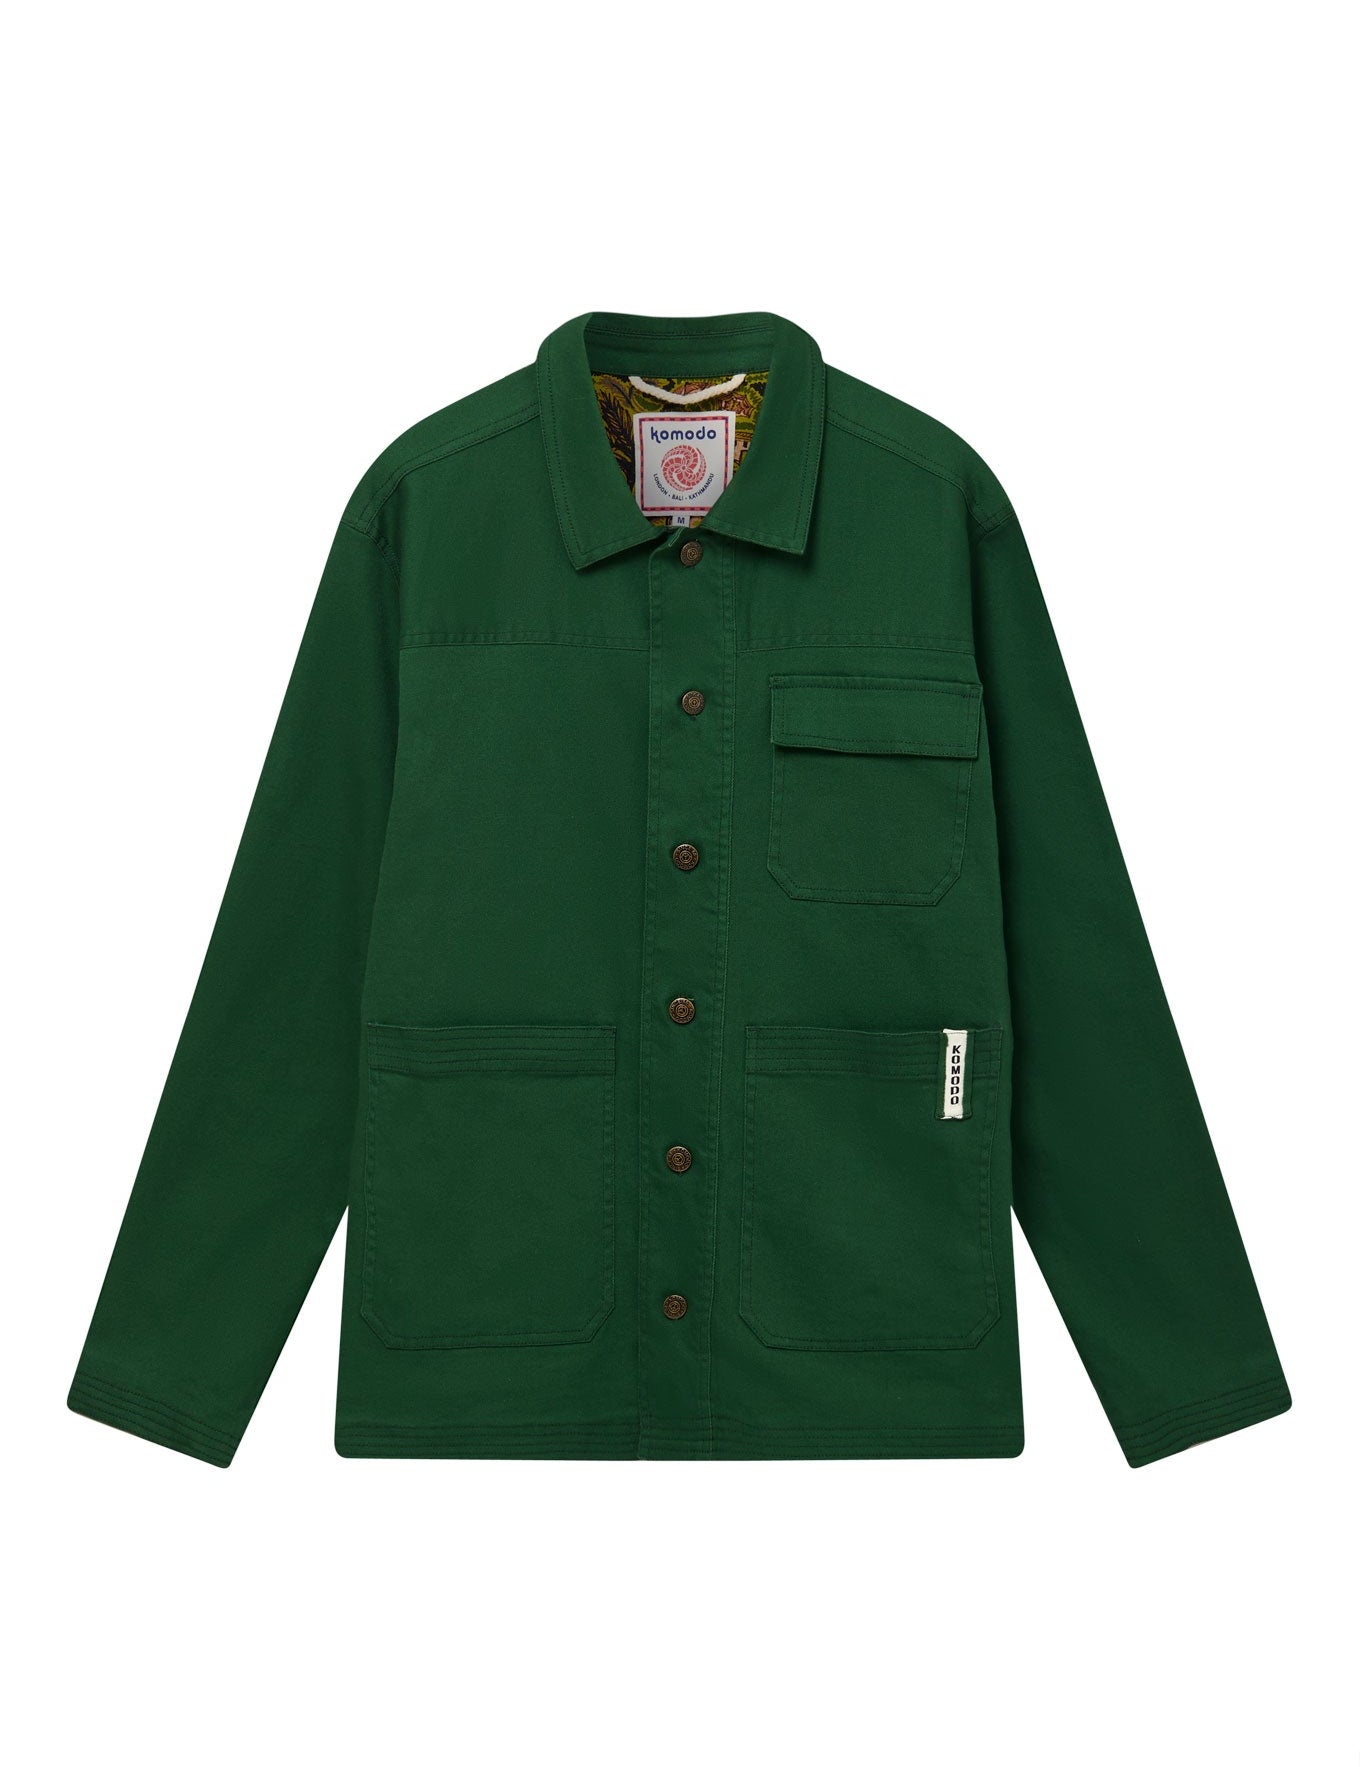 C1-MCT-63-landon-jacket-green_c3a77e24-b8e4-441c-9498-fdd8f99232e3.jpg